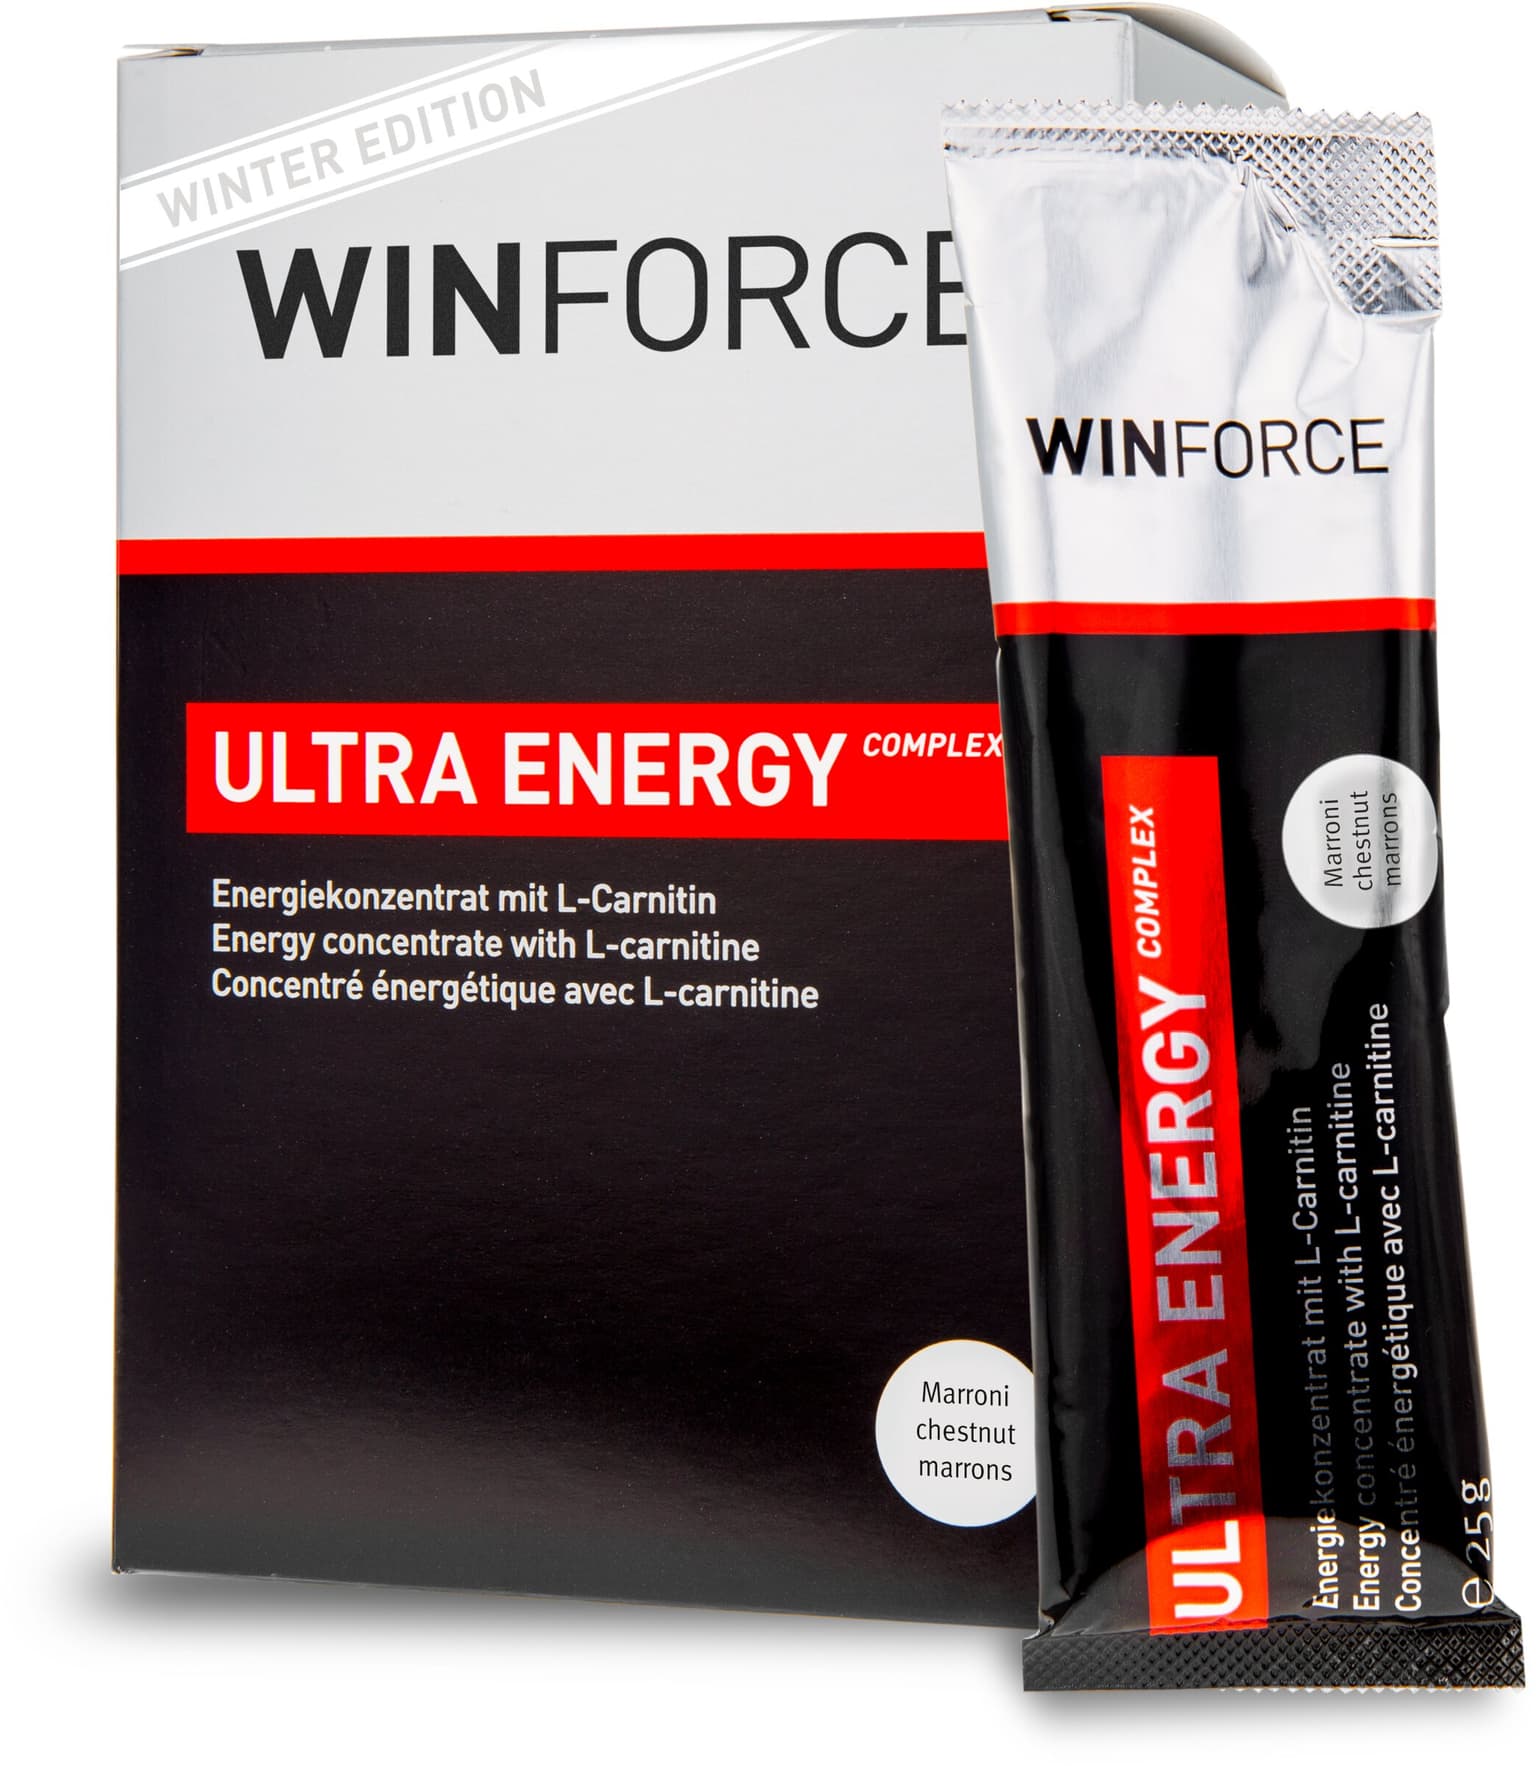 Winforce Winforce Ultra Energy Complex Gel farbig 1